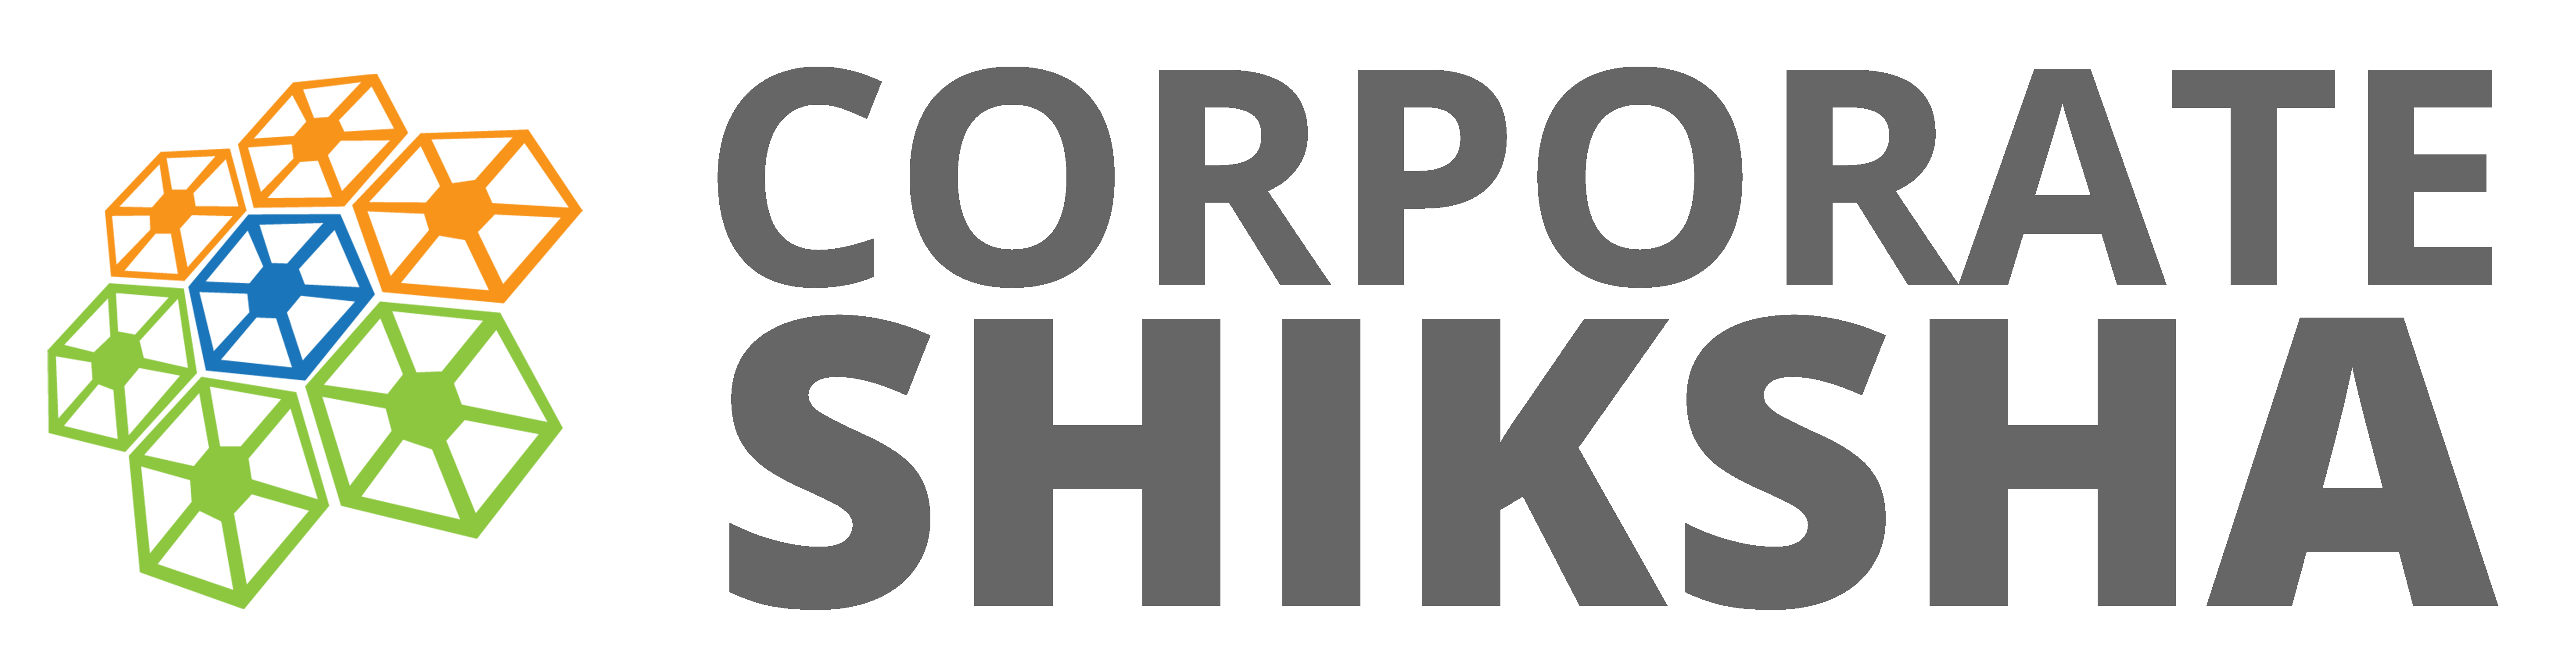 Corporate Shiksha